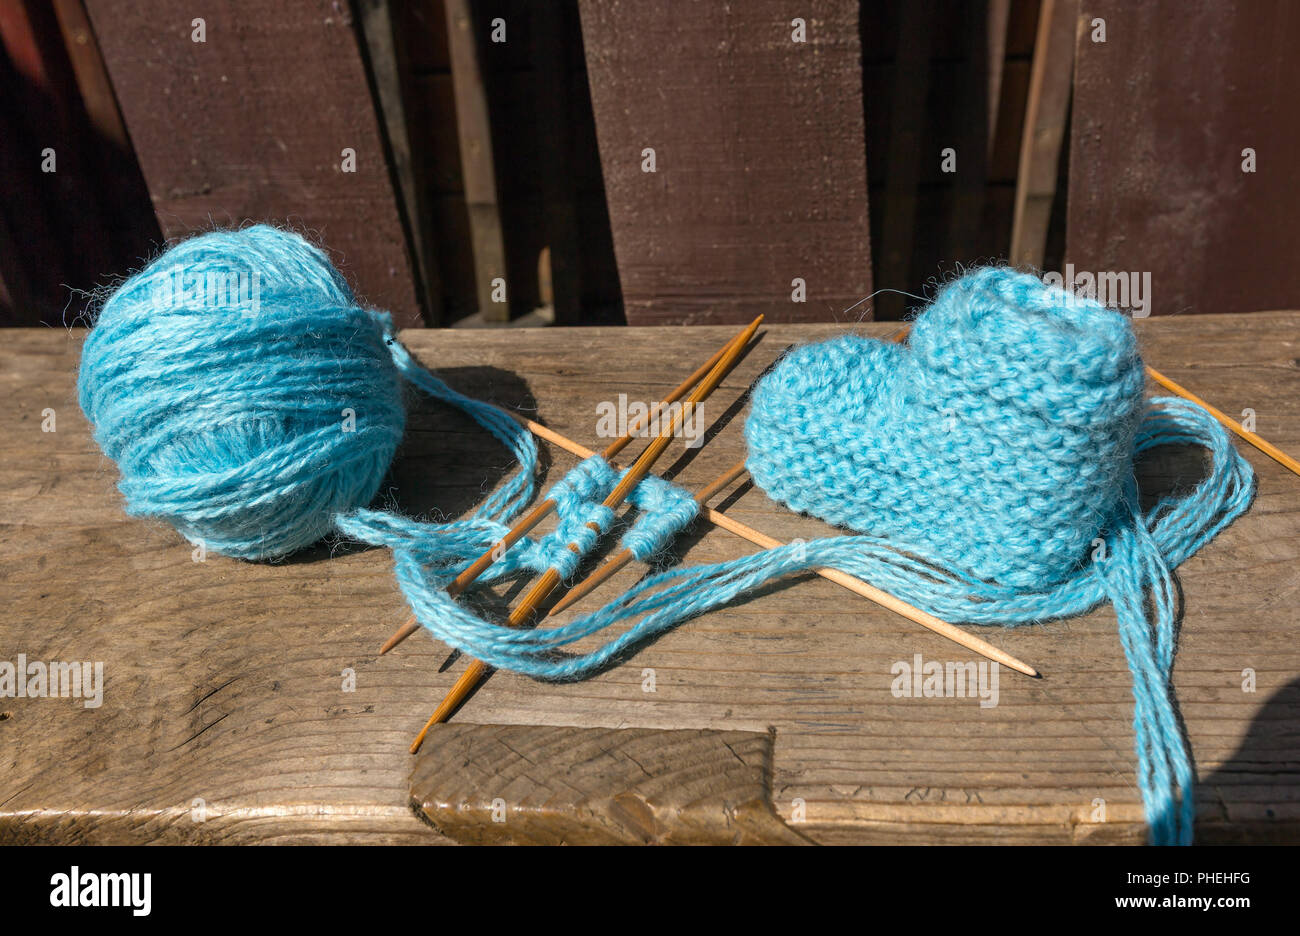 Large Knitting Needles Stuck Large Ball Blue Yarn Next Product Stock Photo  by ©Serebrova 524900754